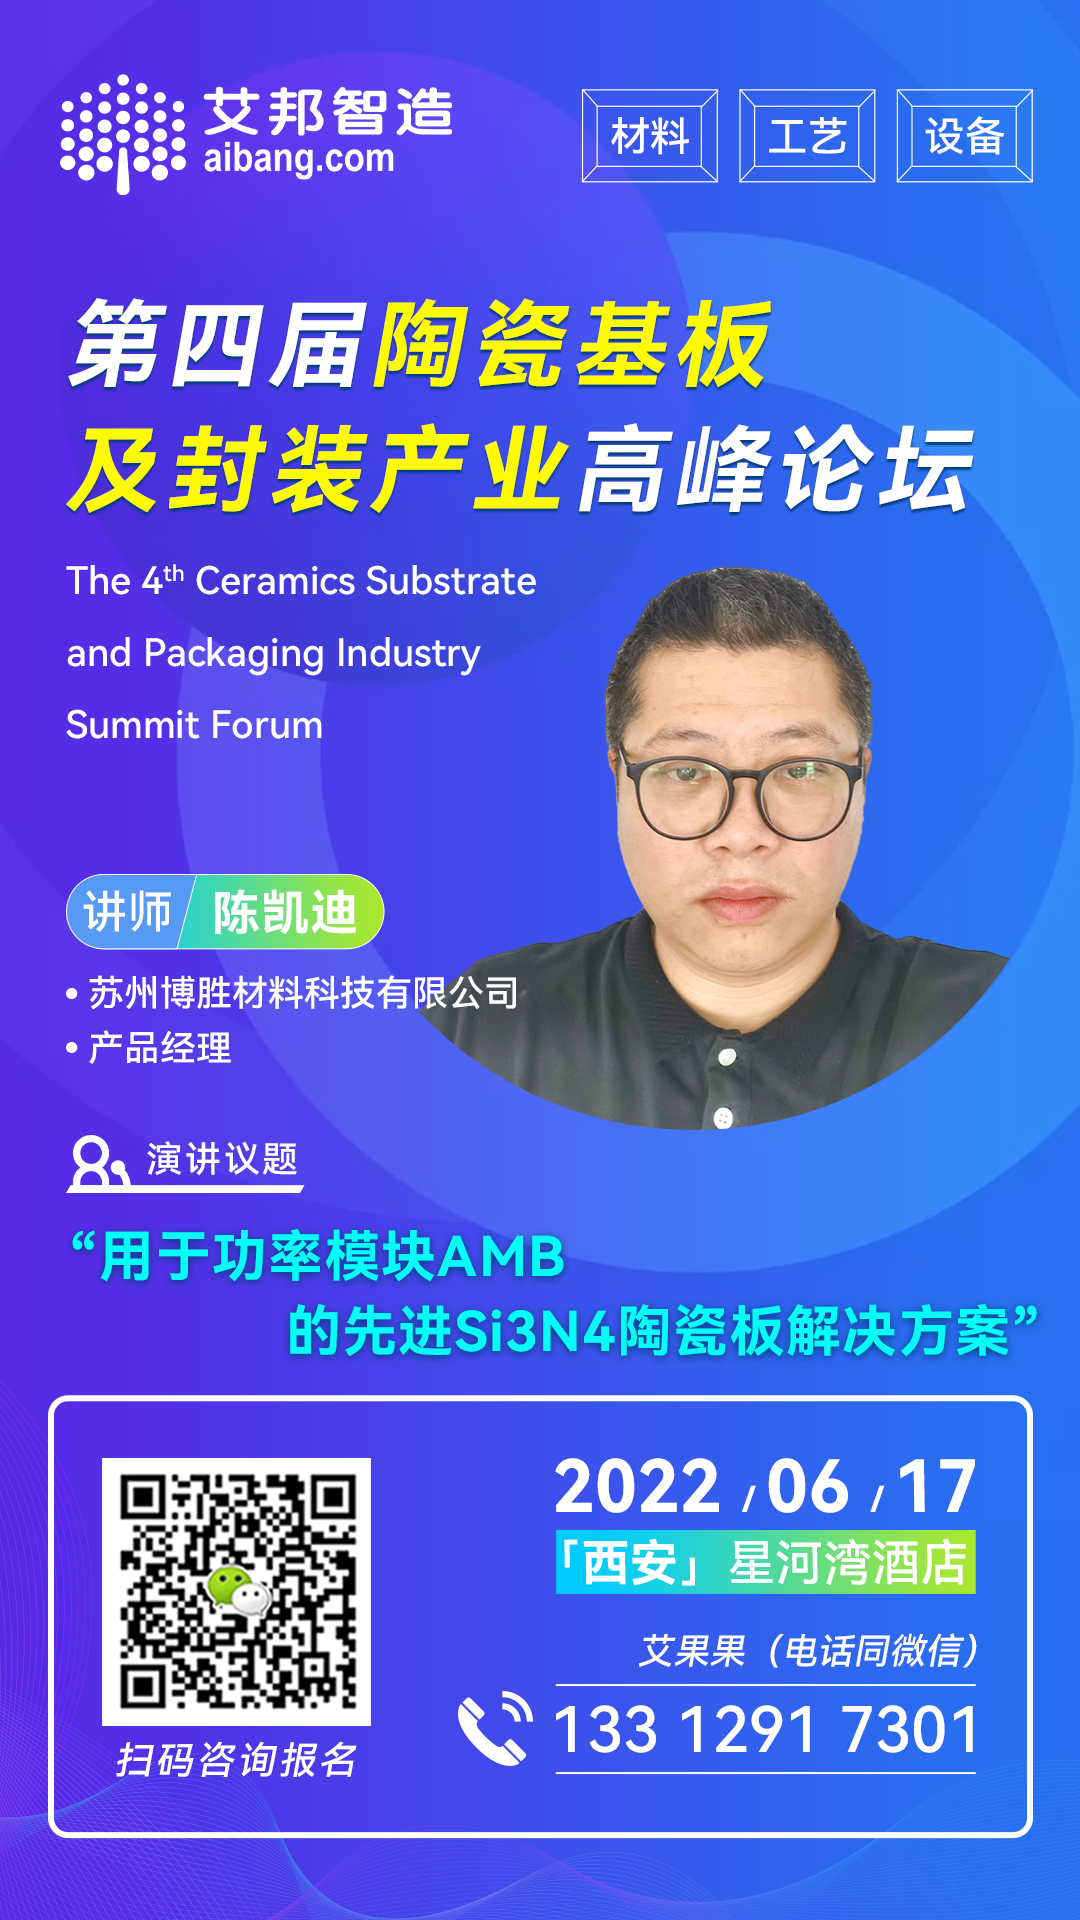 苏州博胜将出席第四届陶瓷基板及封装产业高峰论坛并做主题演讲